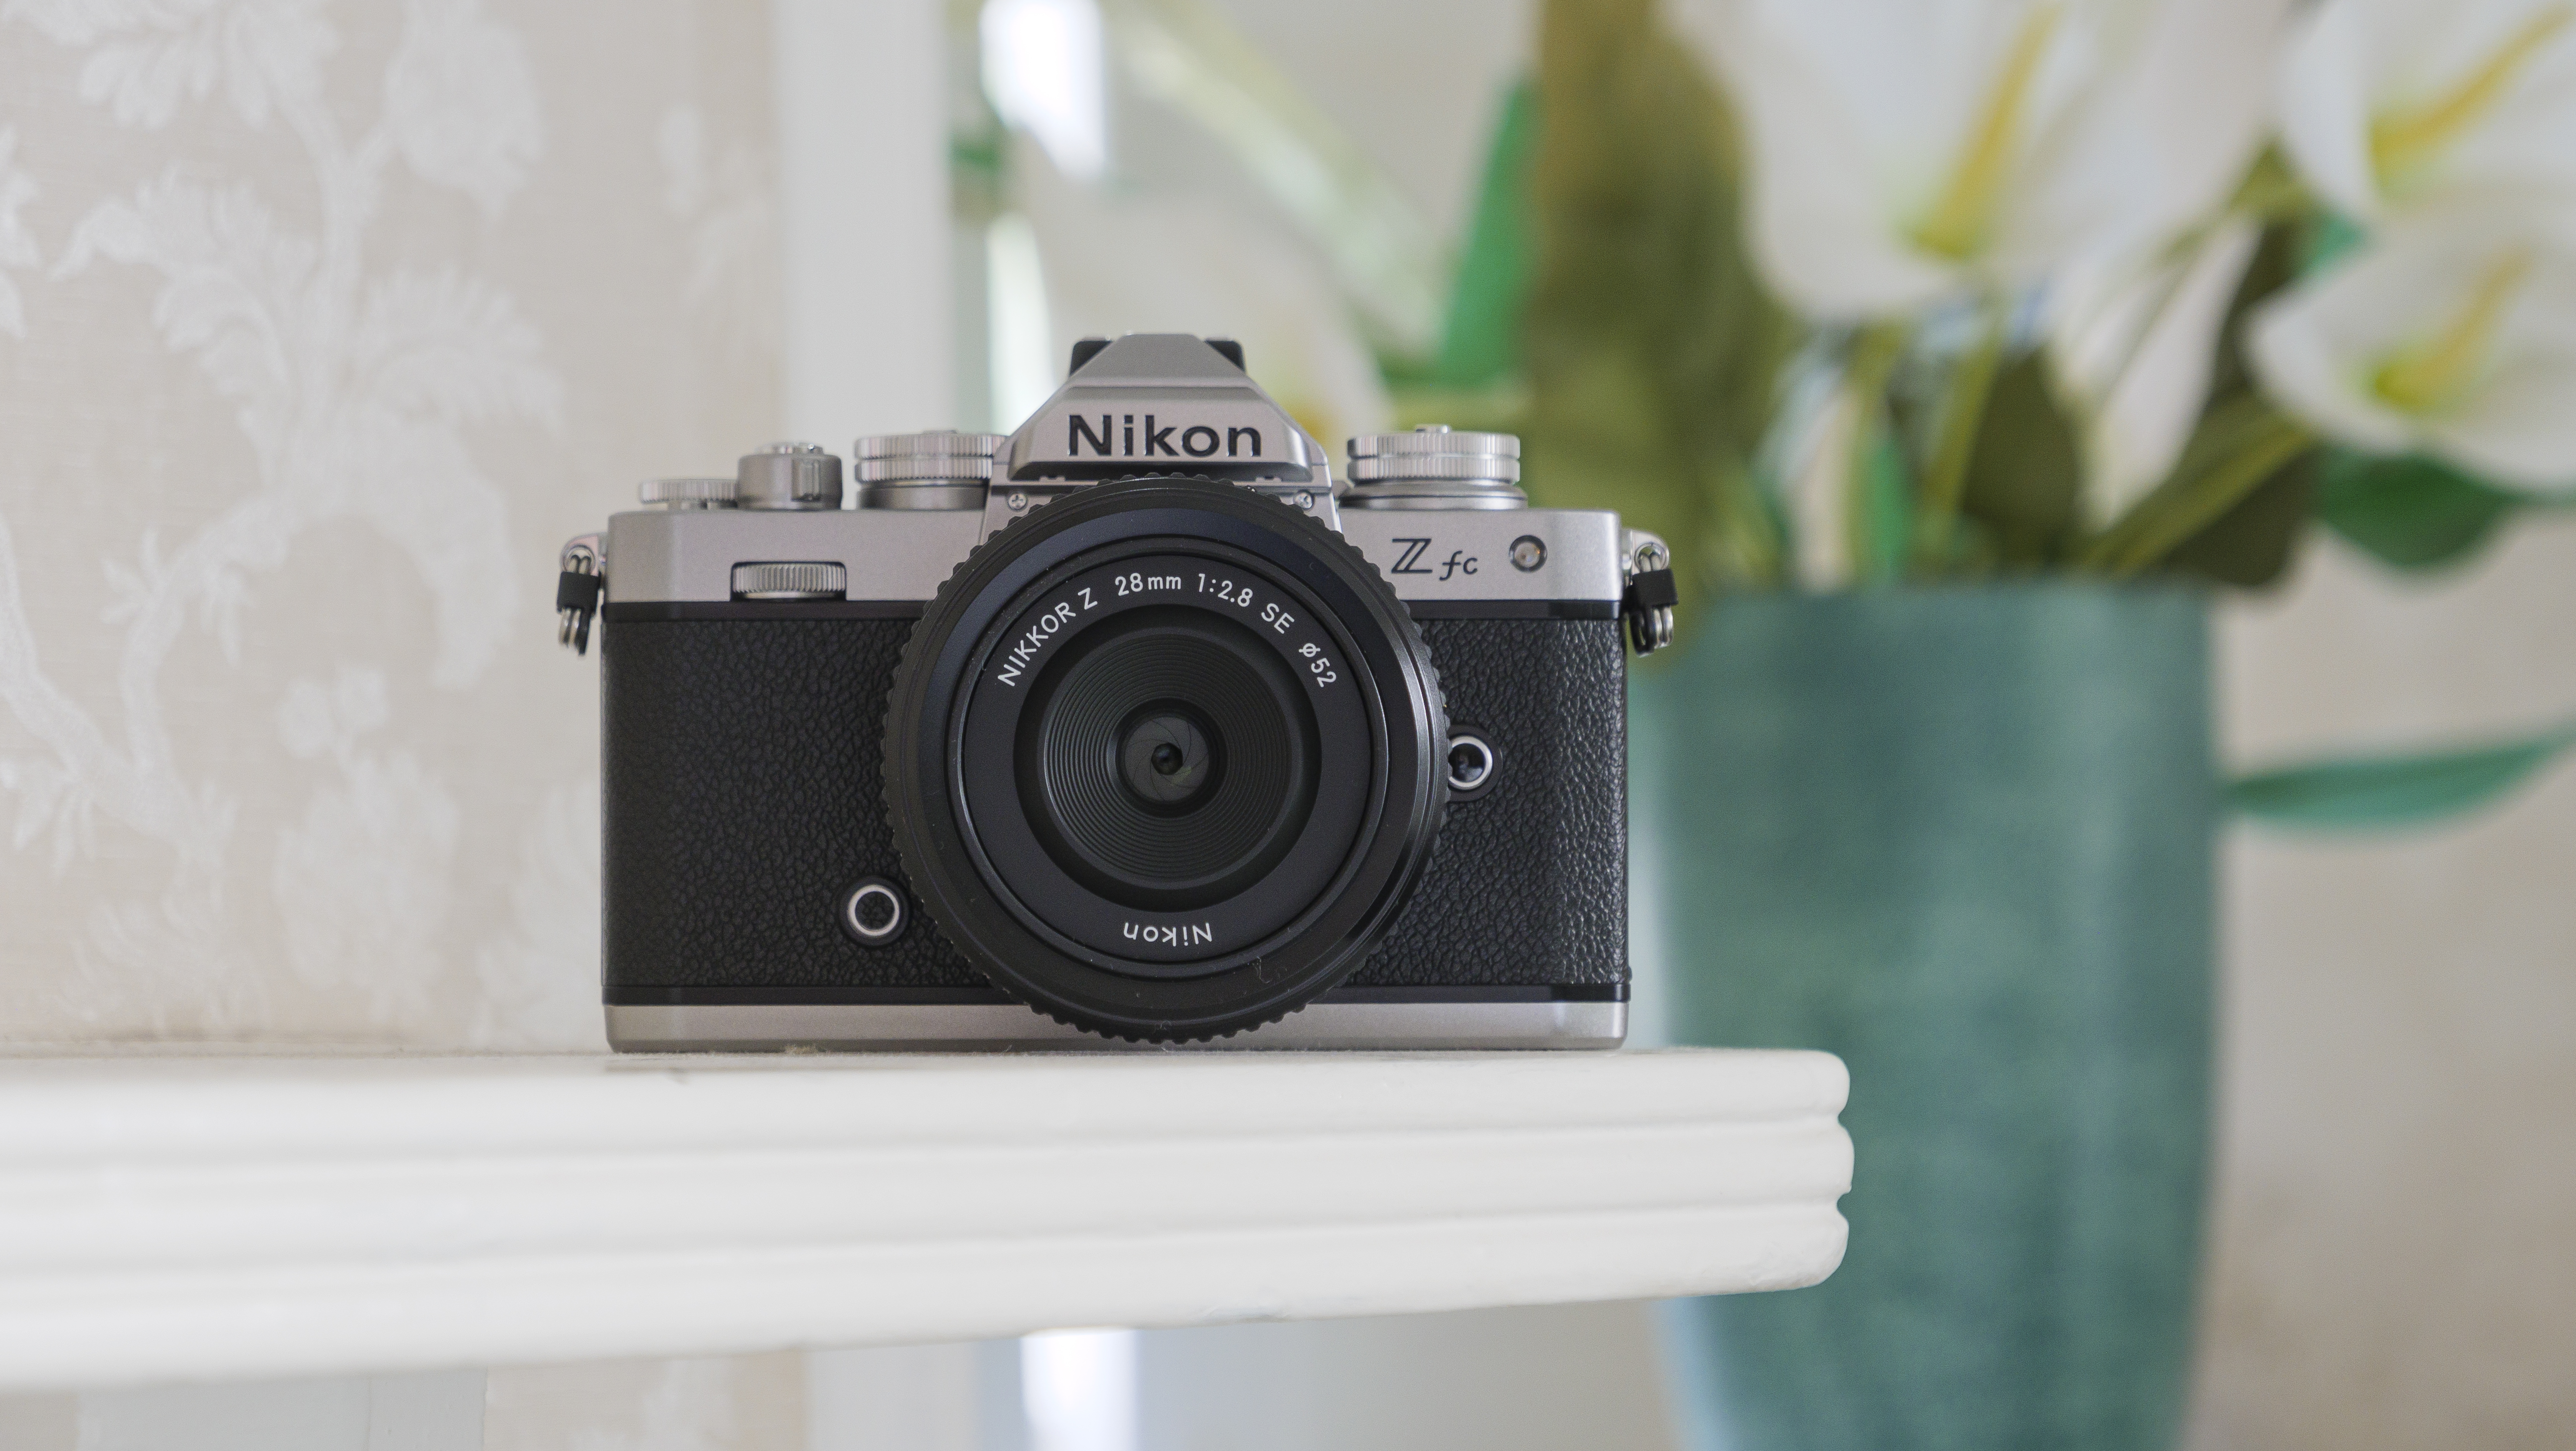 The Nikon Z fc camera on a shelf